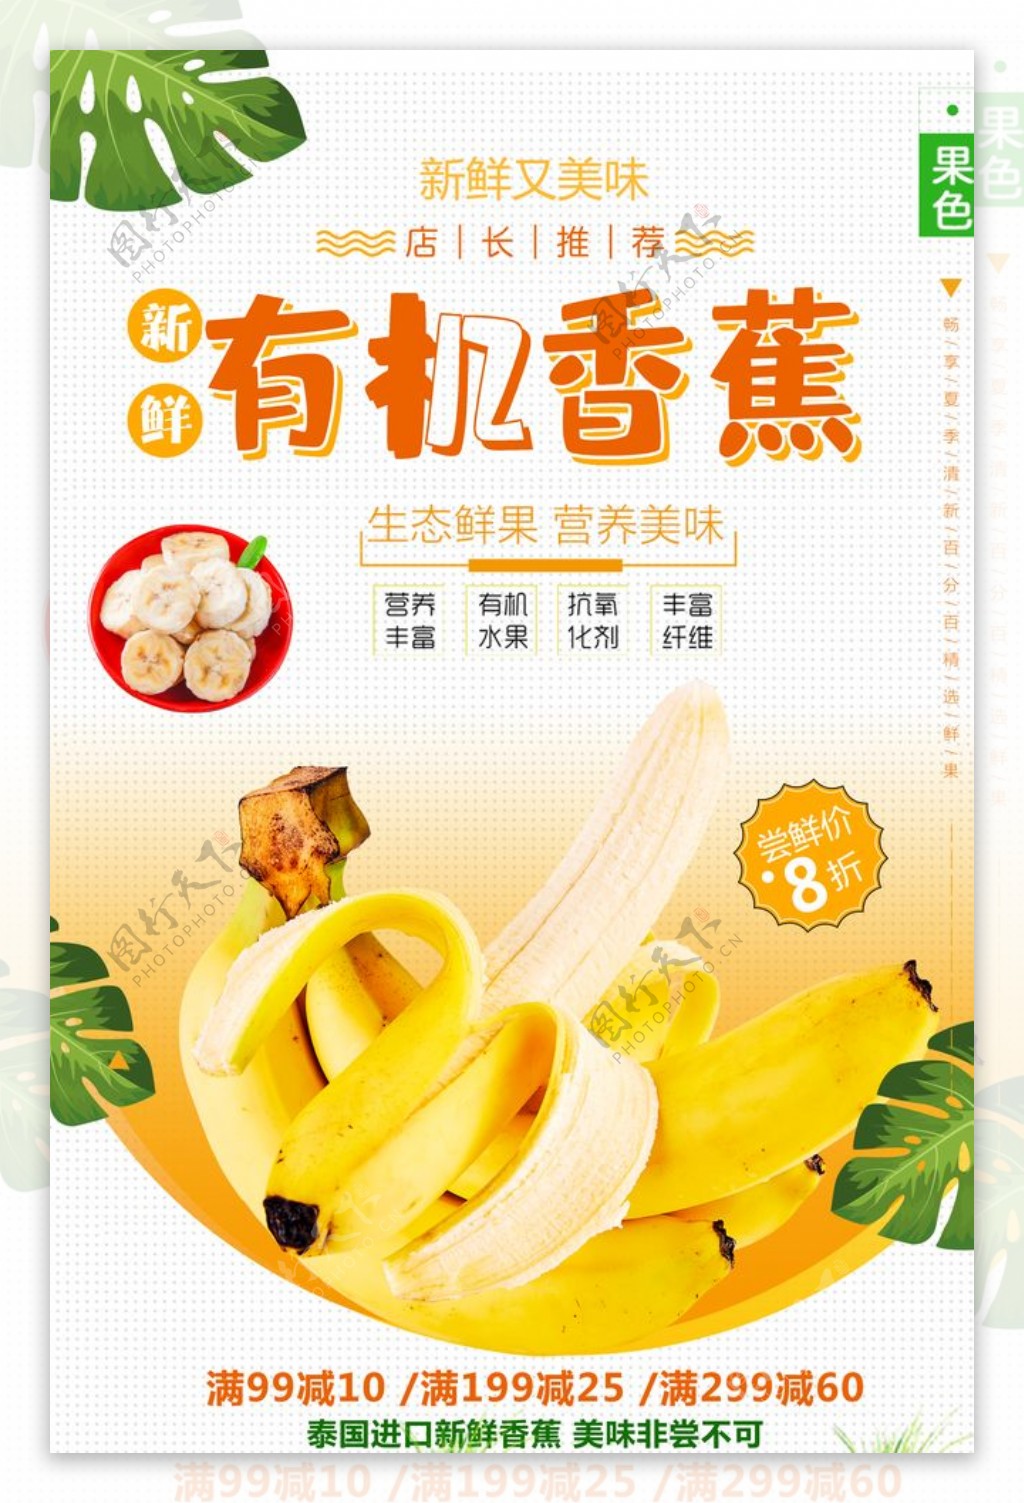 清新简约香蕉促销宣传海报